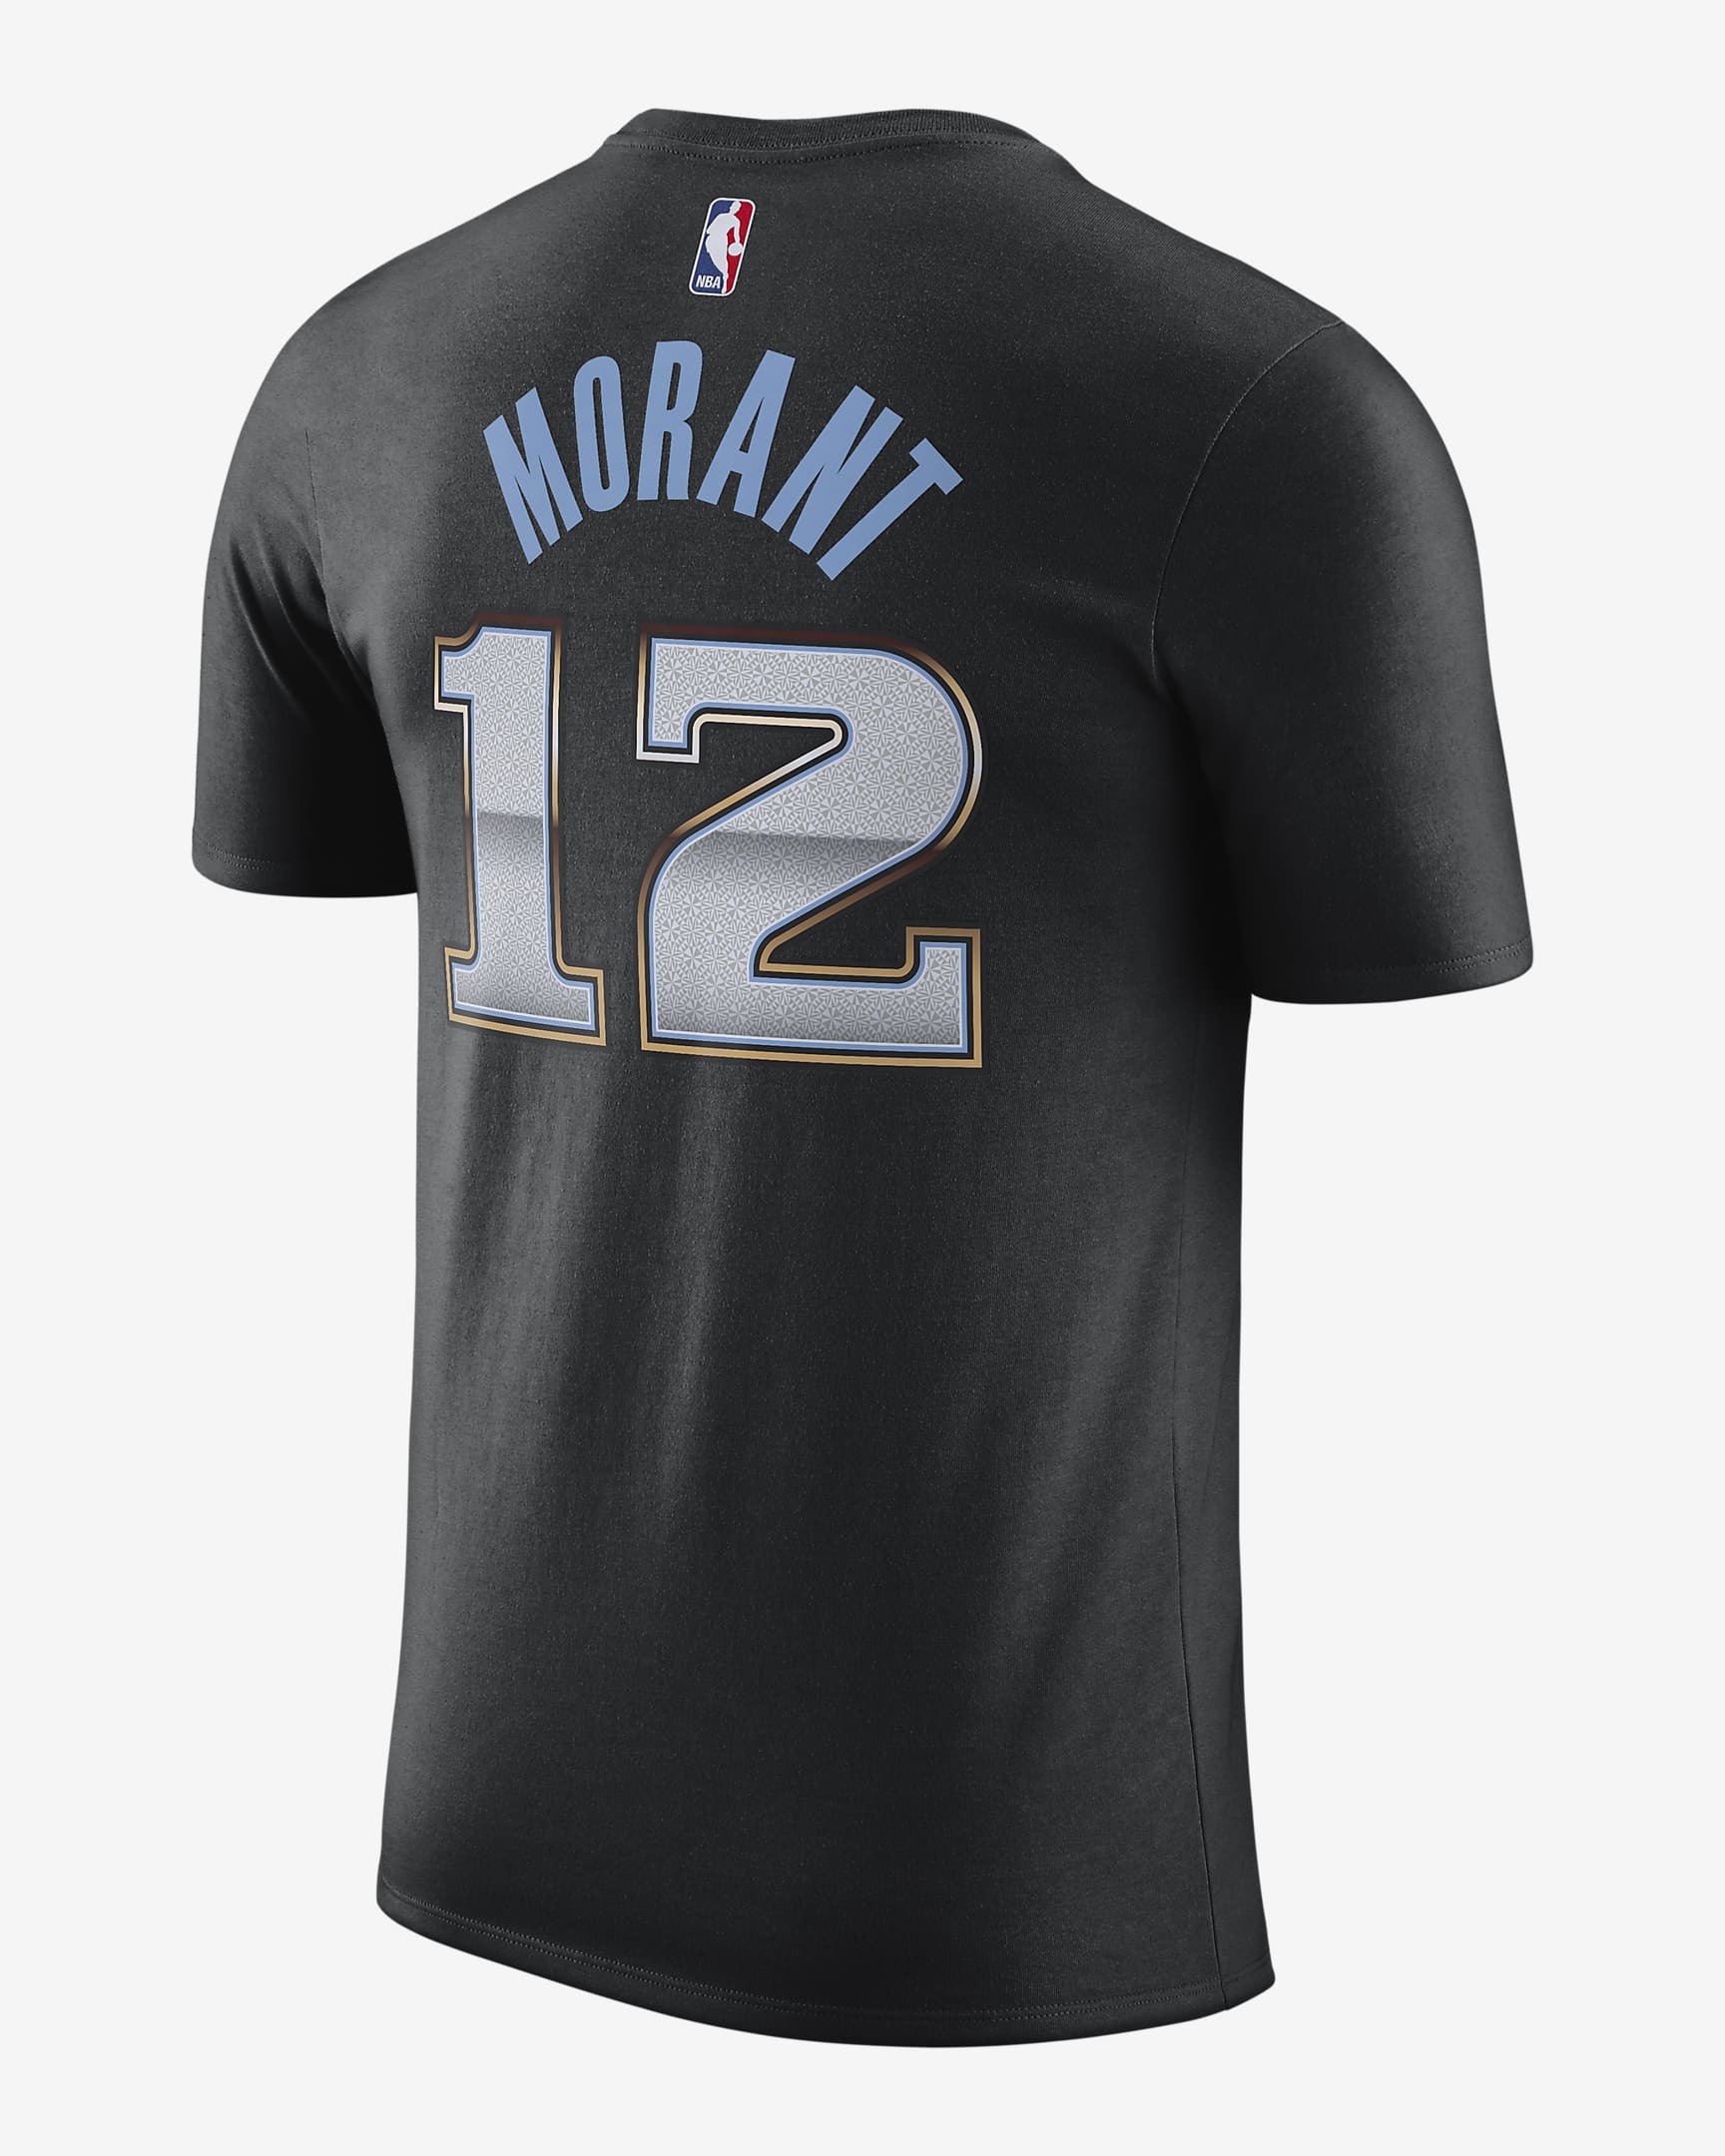 Playera Nike NBA para hombre Memphis Grizzlies City Edition. Nike.com